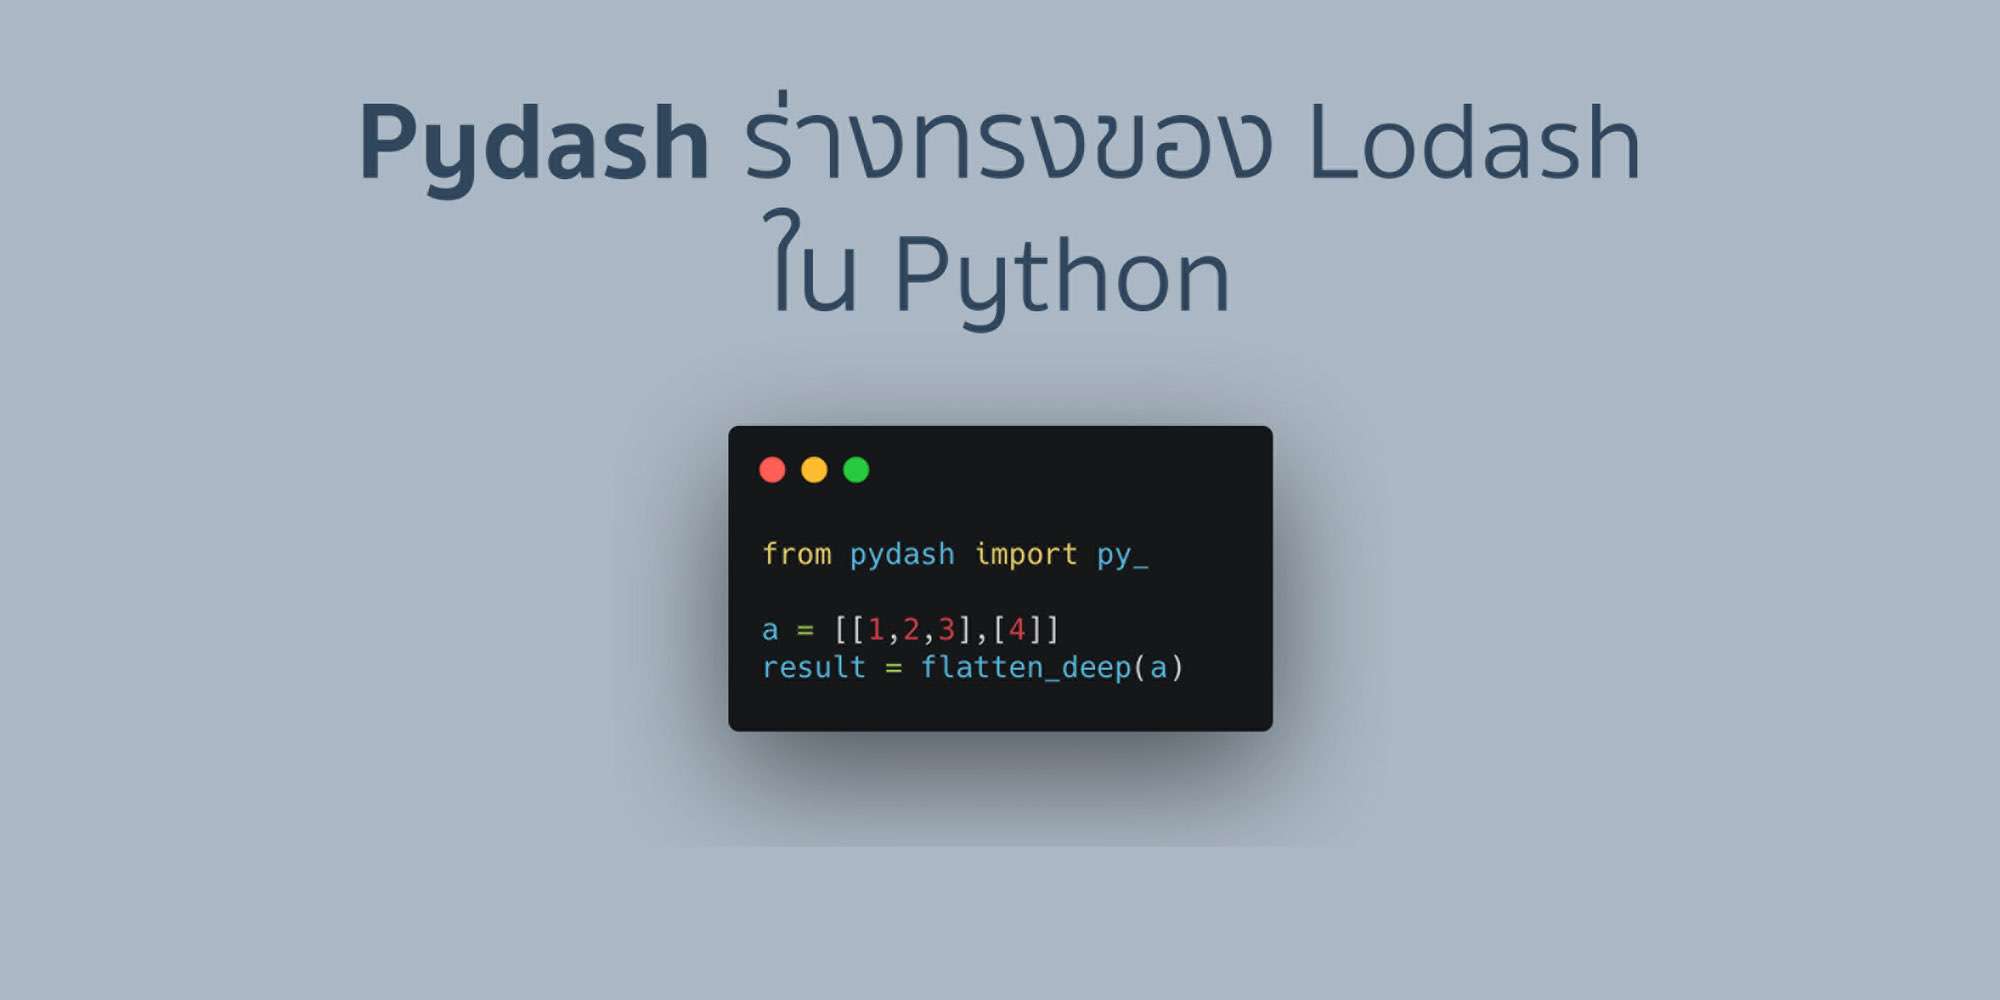 Pydash ร่างทรงของ Lodash ใน Python